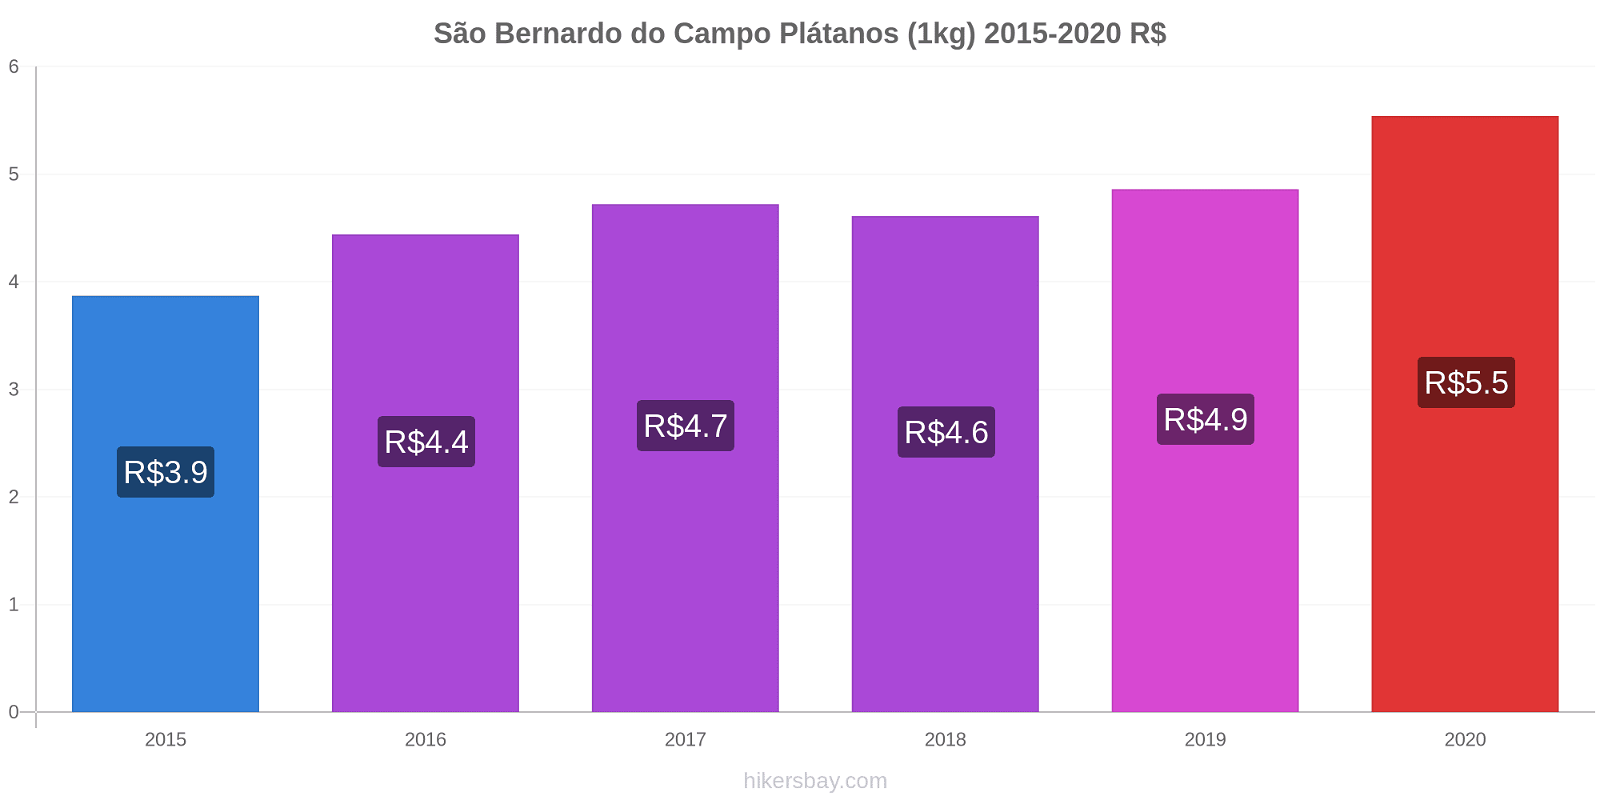 São Bernardo do Campo cambios de precios Plátano (1kg) hikersbay.com